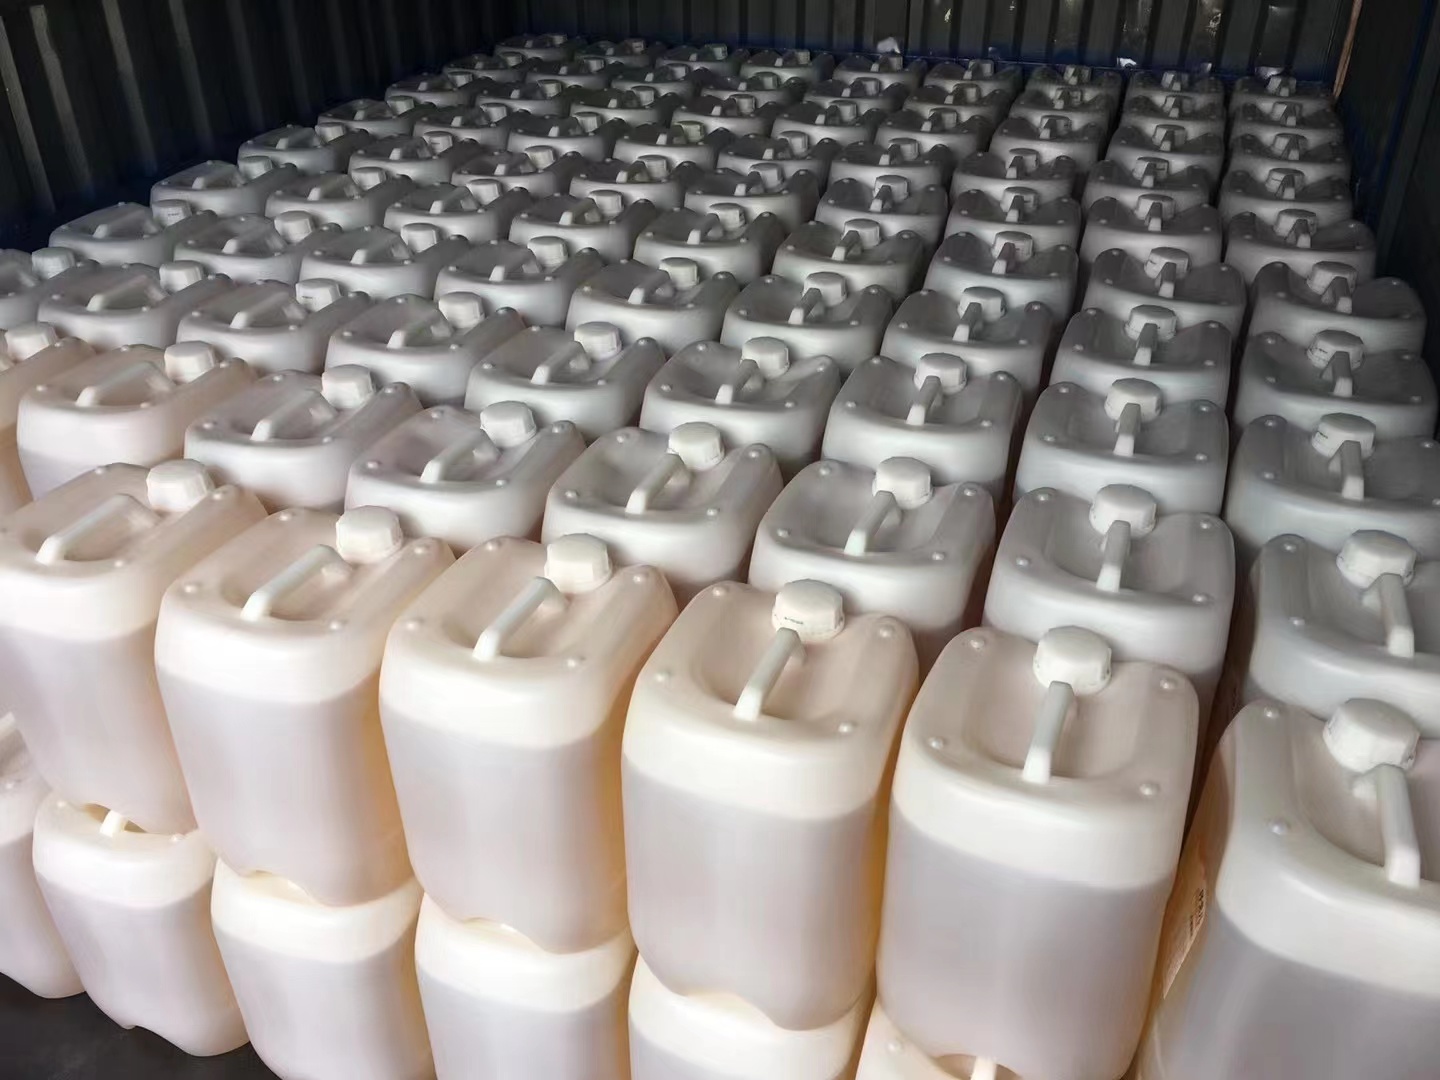 奶茶原料植脂末糖浆海运到澳大利亚悉尼开店的全流程攻略分享